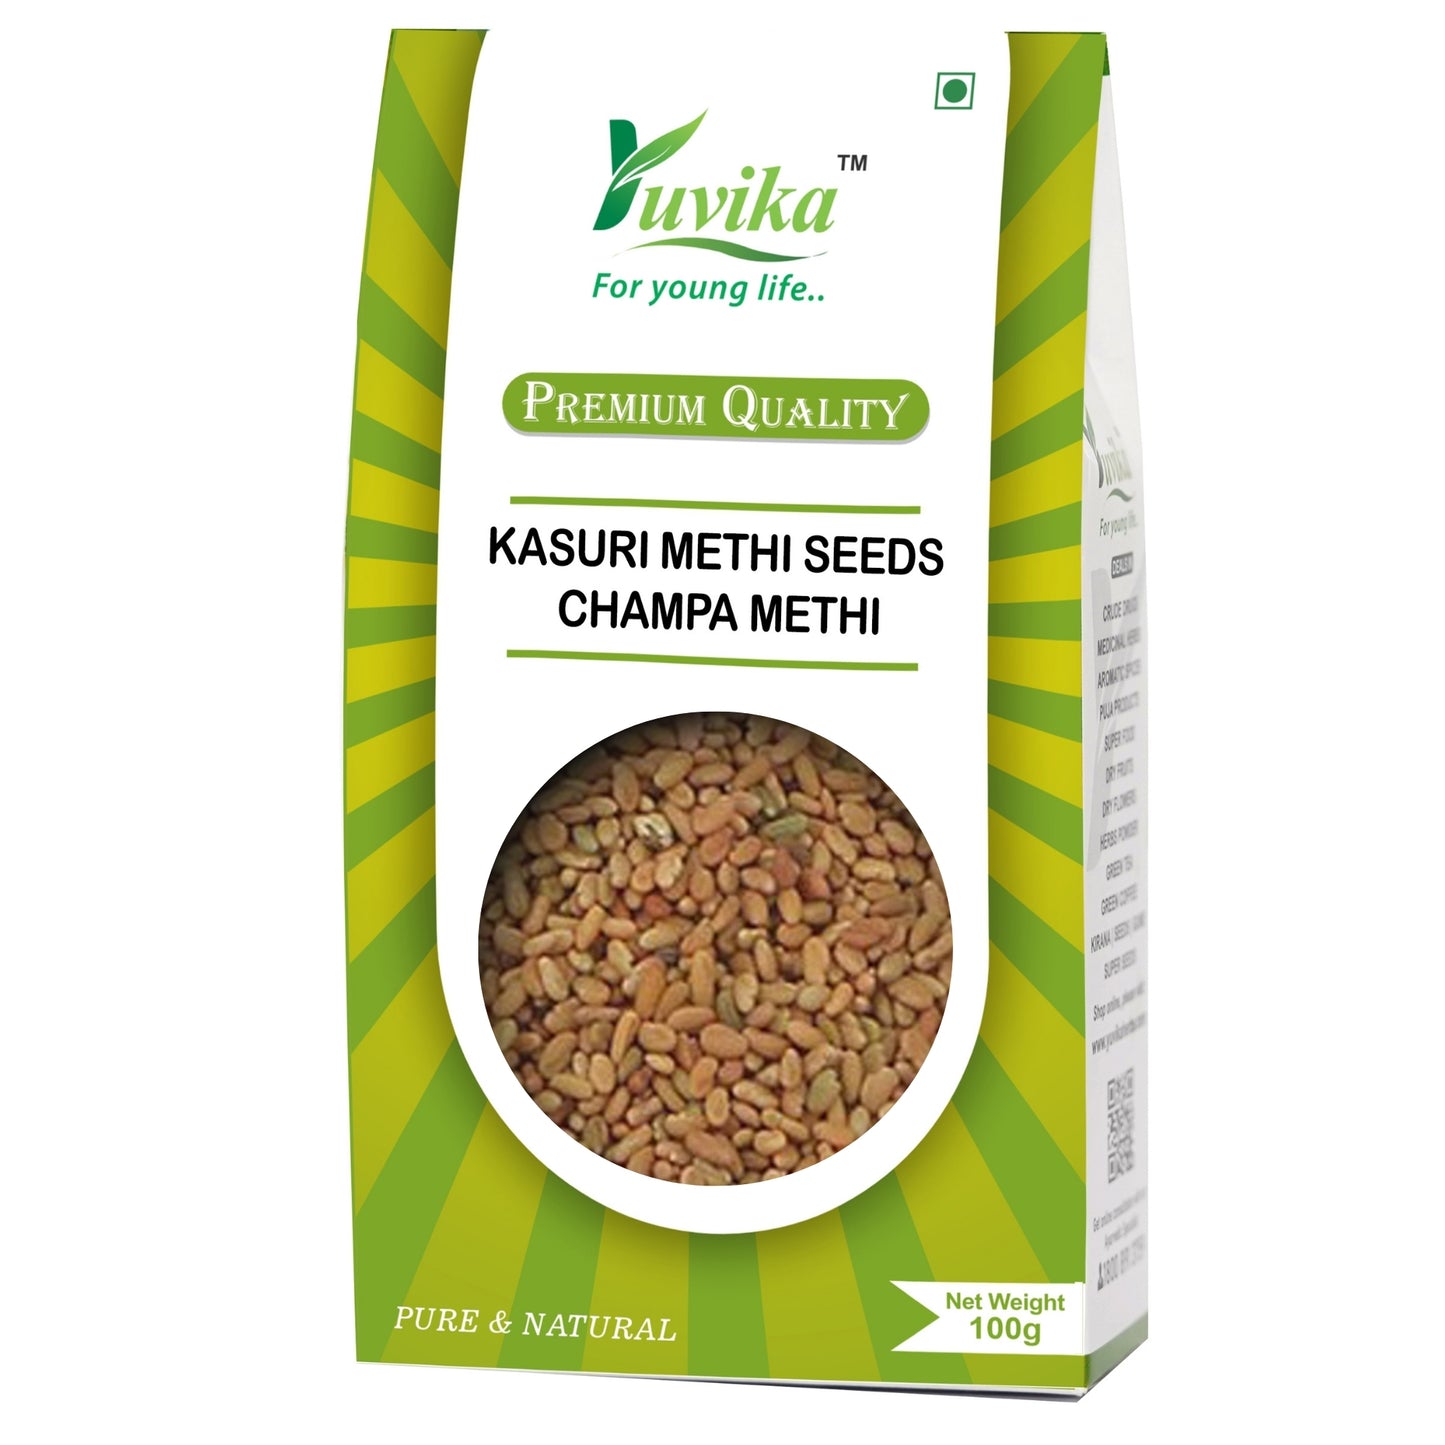 Kasuri Methi Seeds - Champa Methi (100g)